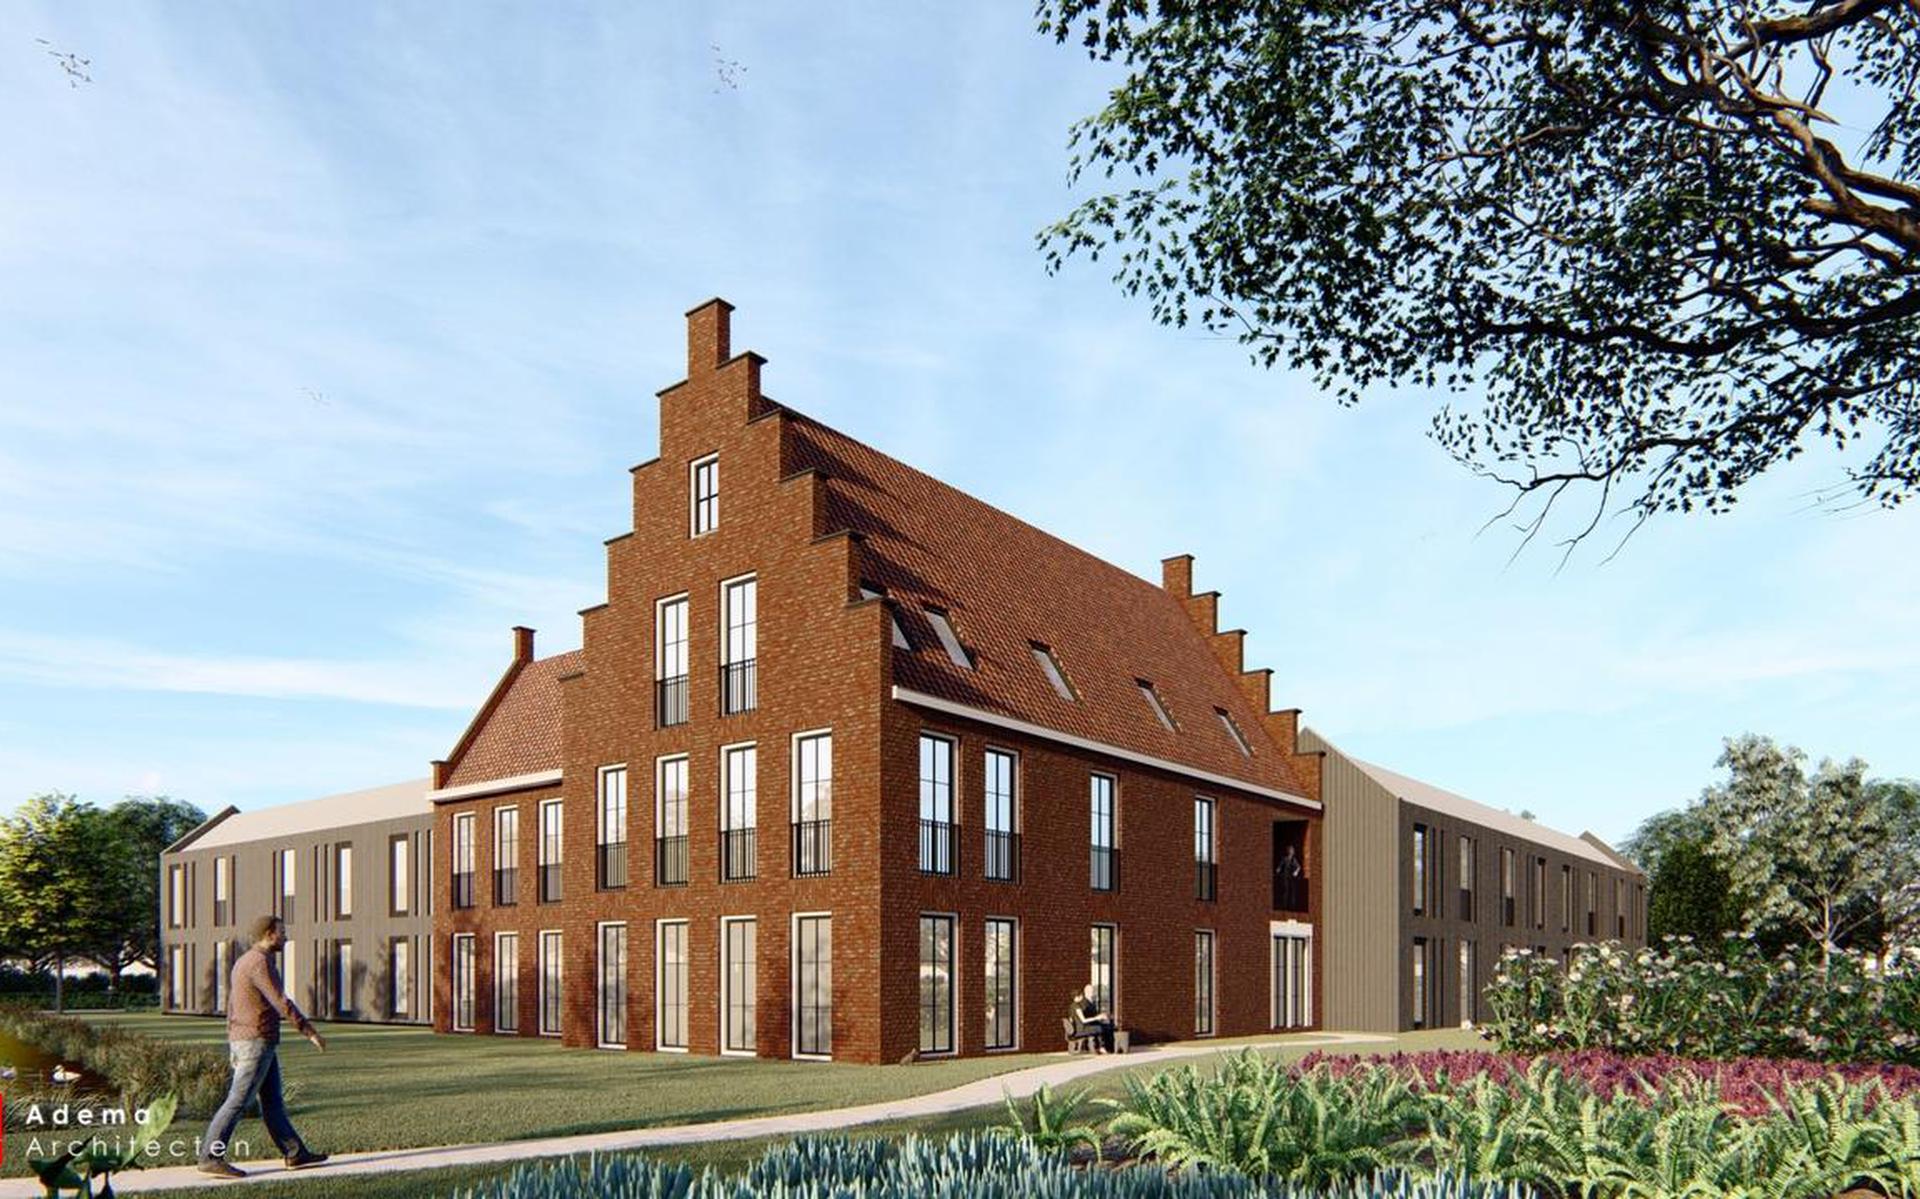 Visualisatie van de nieuwe appartementen aan de Hege Hearewei in Stiens. Bron: Adema Architecten.